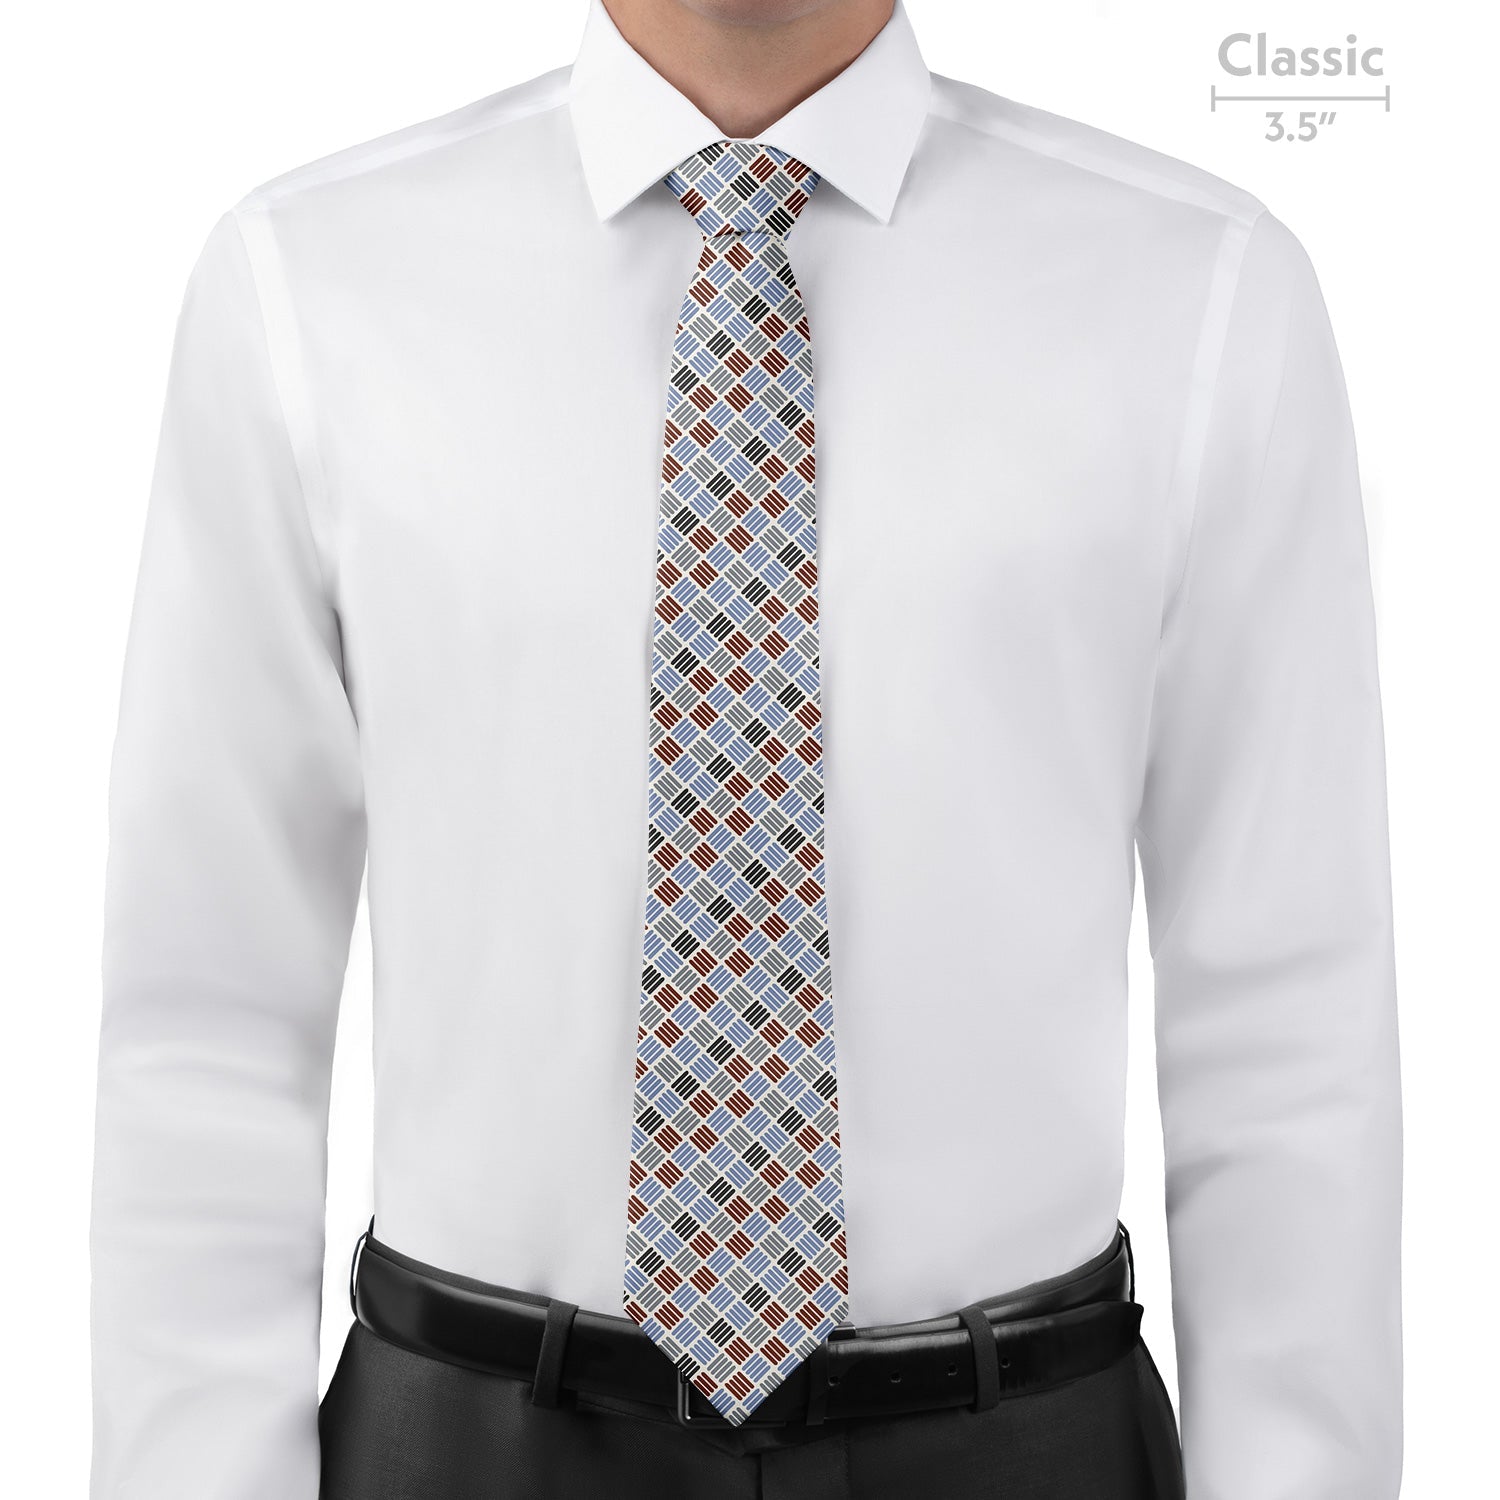 Crosshatch Plaid Necktie - Classic - Knotty Tie Co.